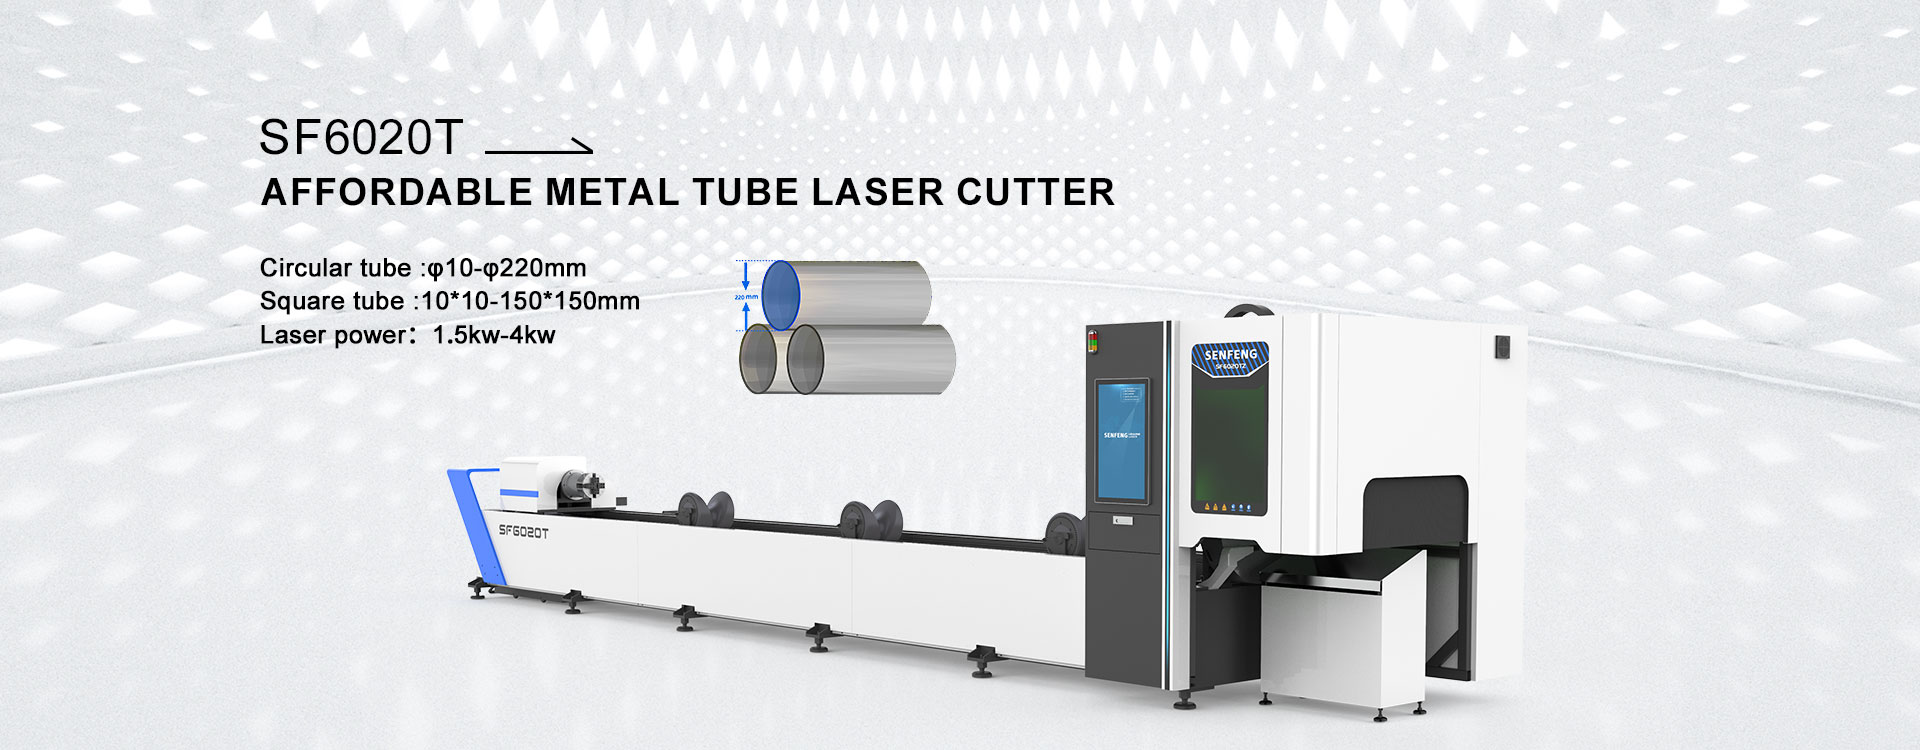 Affordable metal tube laser cutter